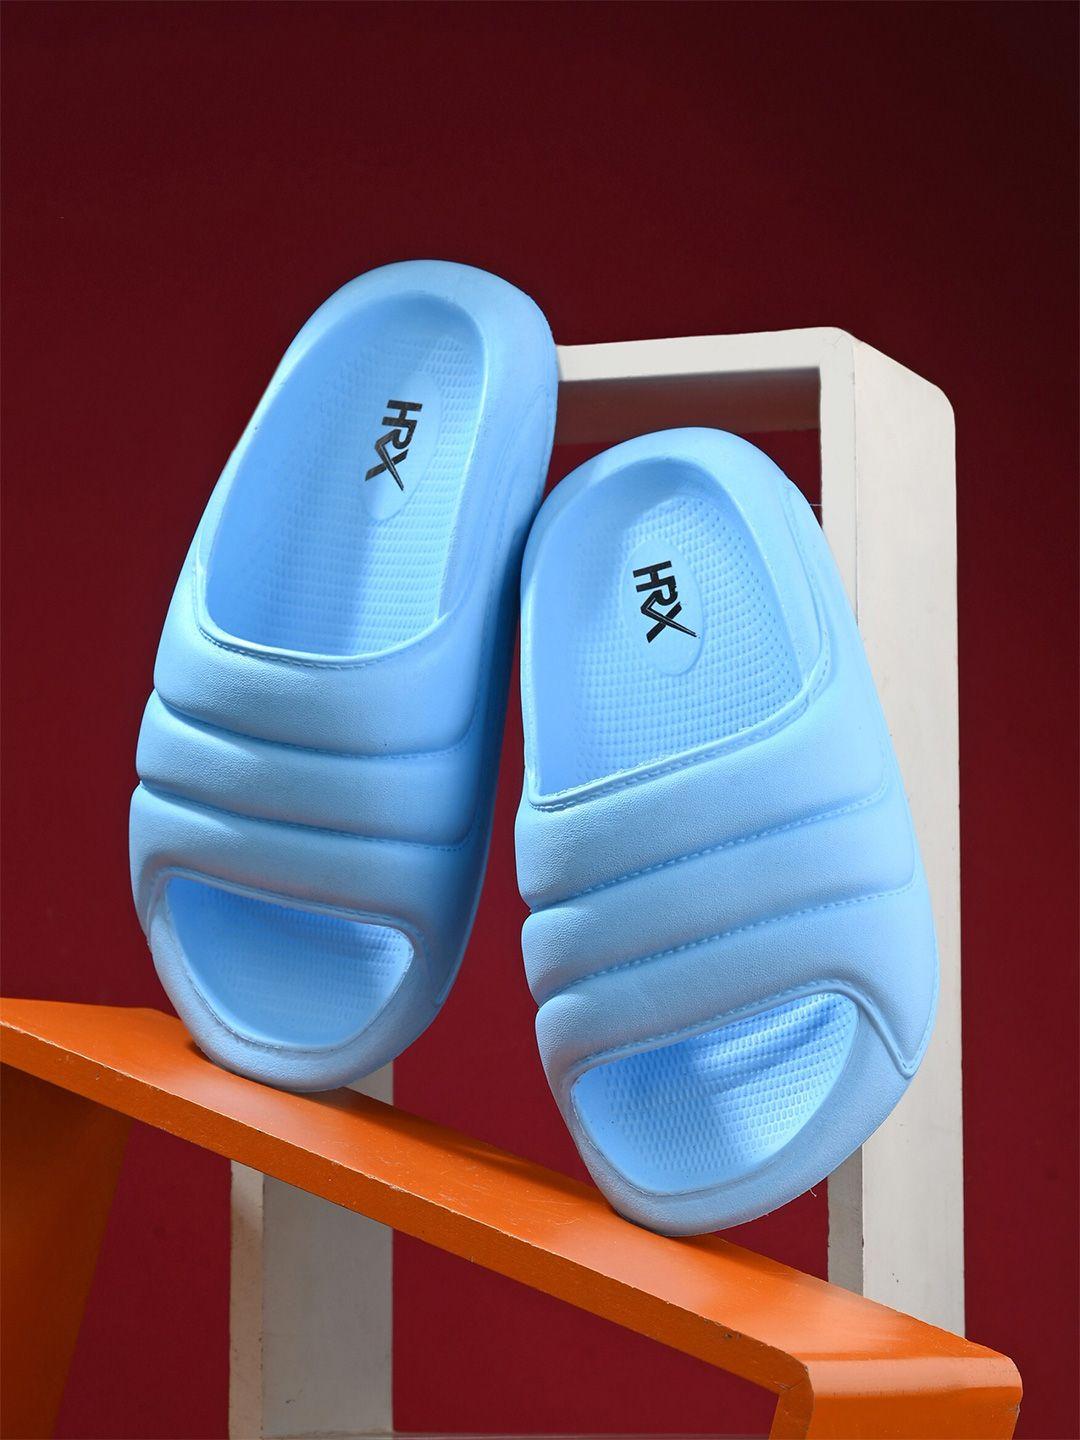 hrx-by-hrithik-roshan-women-blue-textured-rubber-sliders